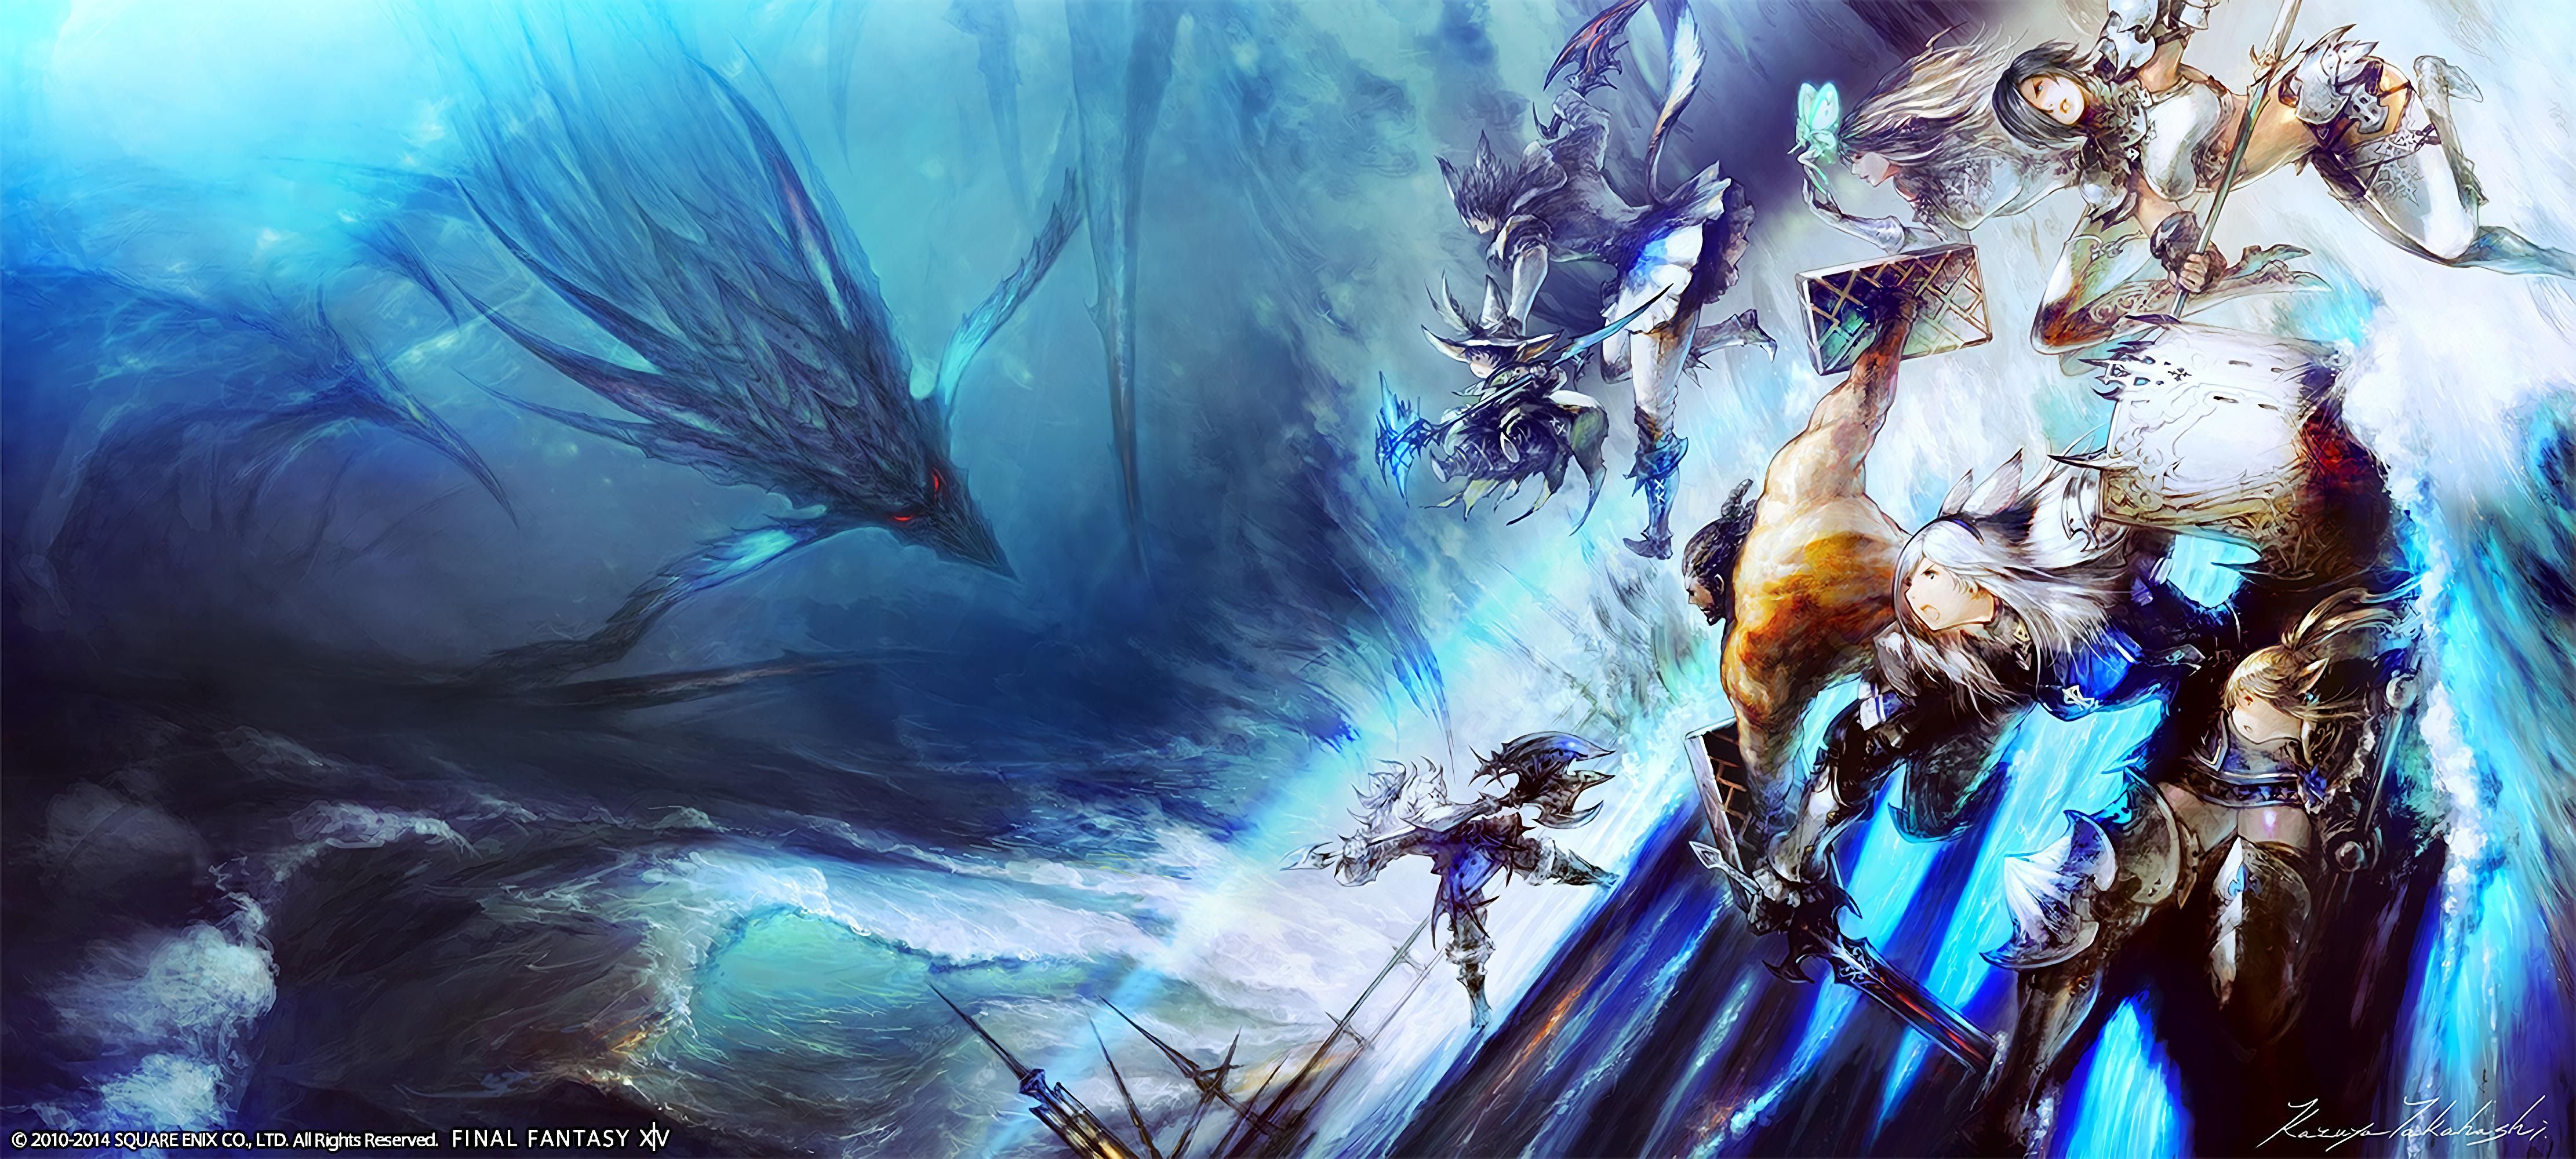 Final Fantasy XIV Stormblood Wallpapers Wallpaper Cave